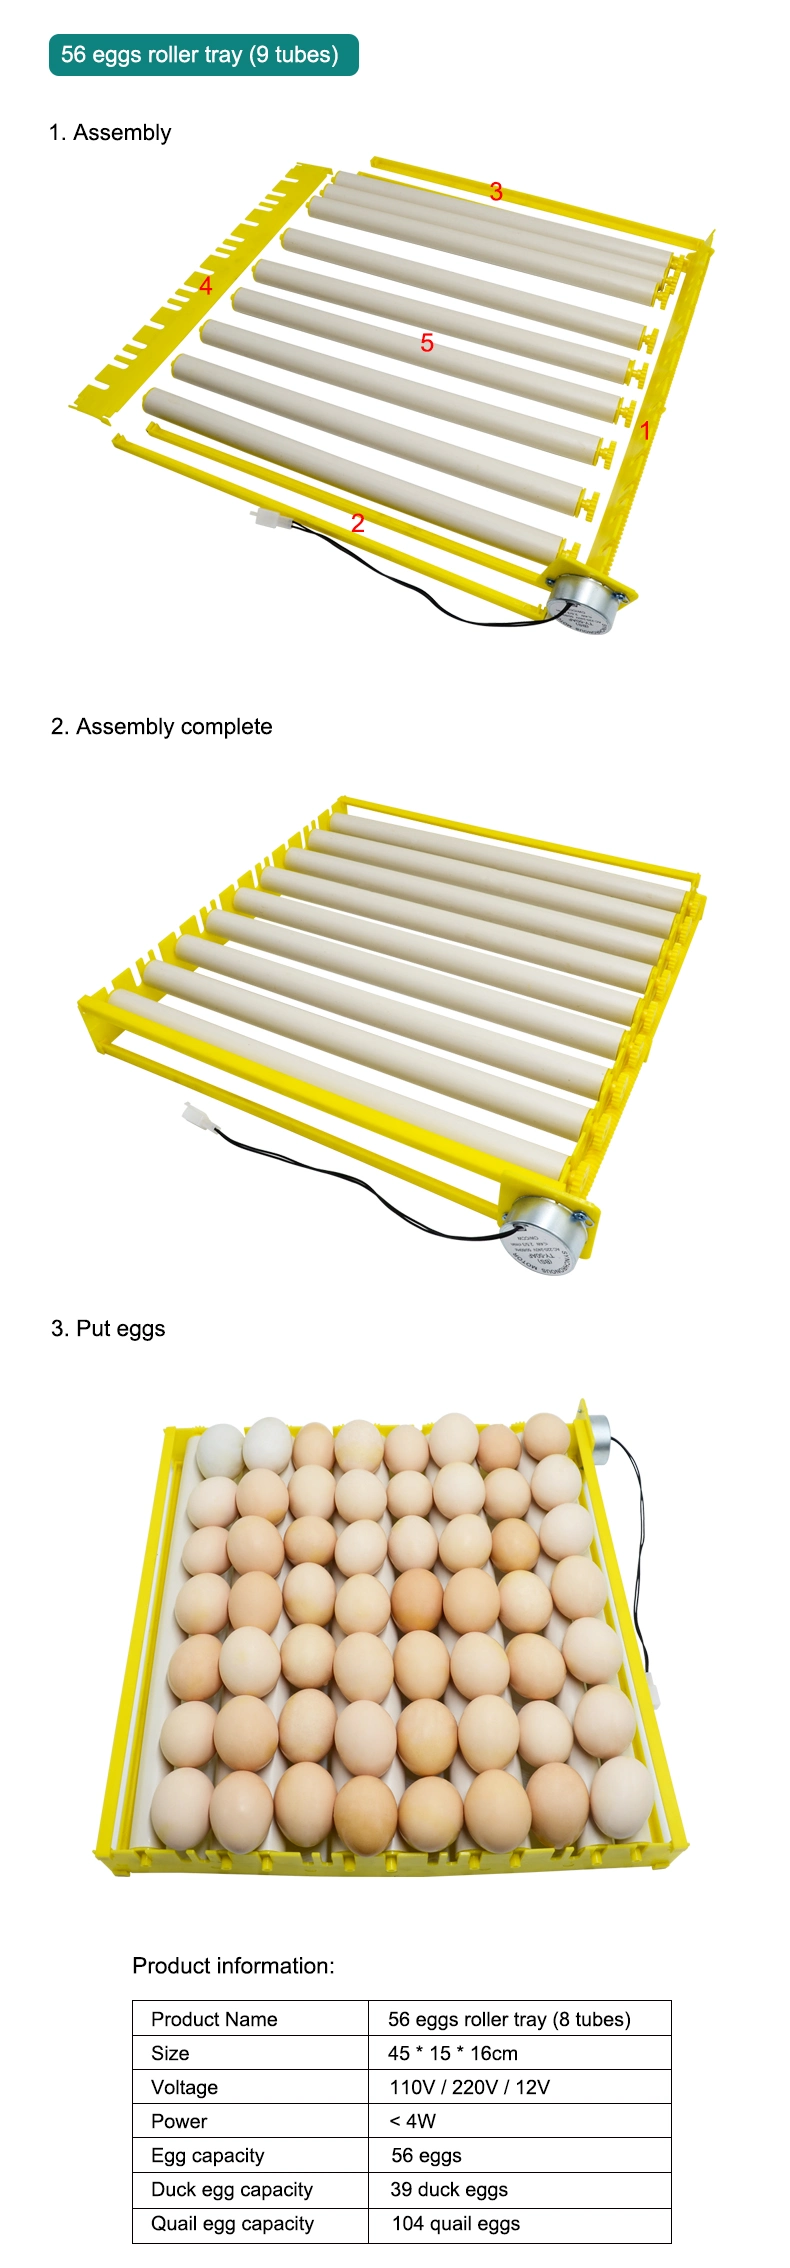 Ht Brand PVC Roll off Tube Design Egg Tray Roller